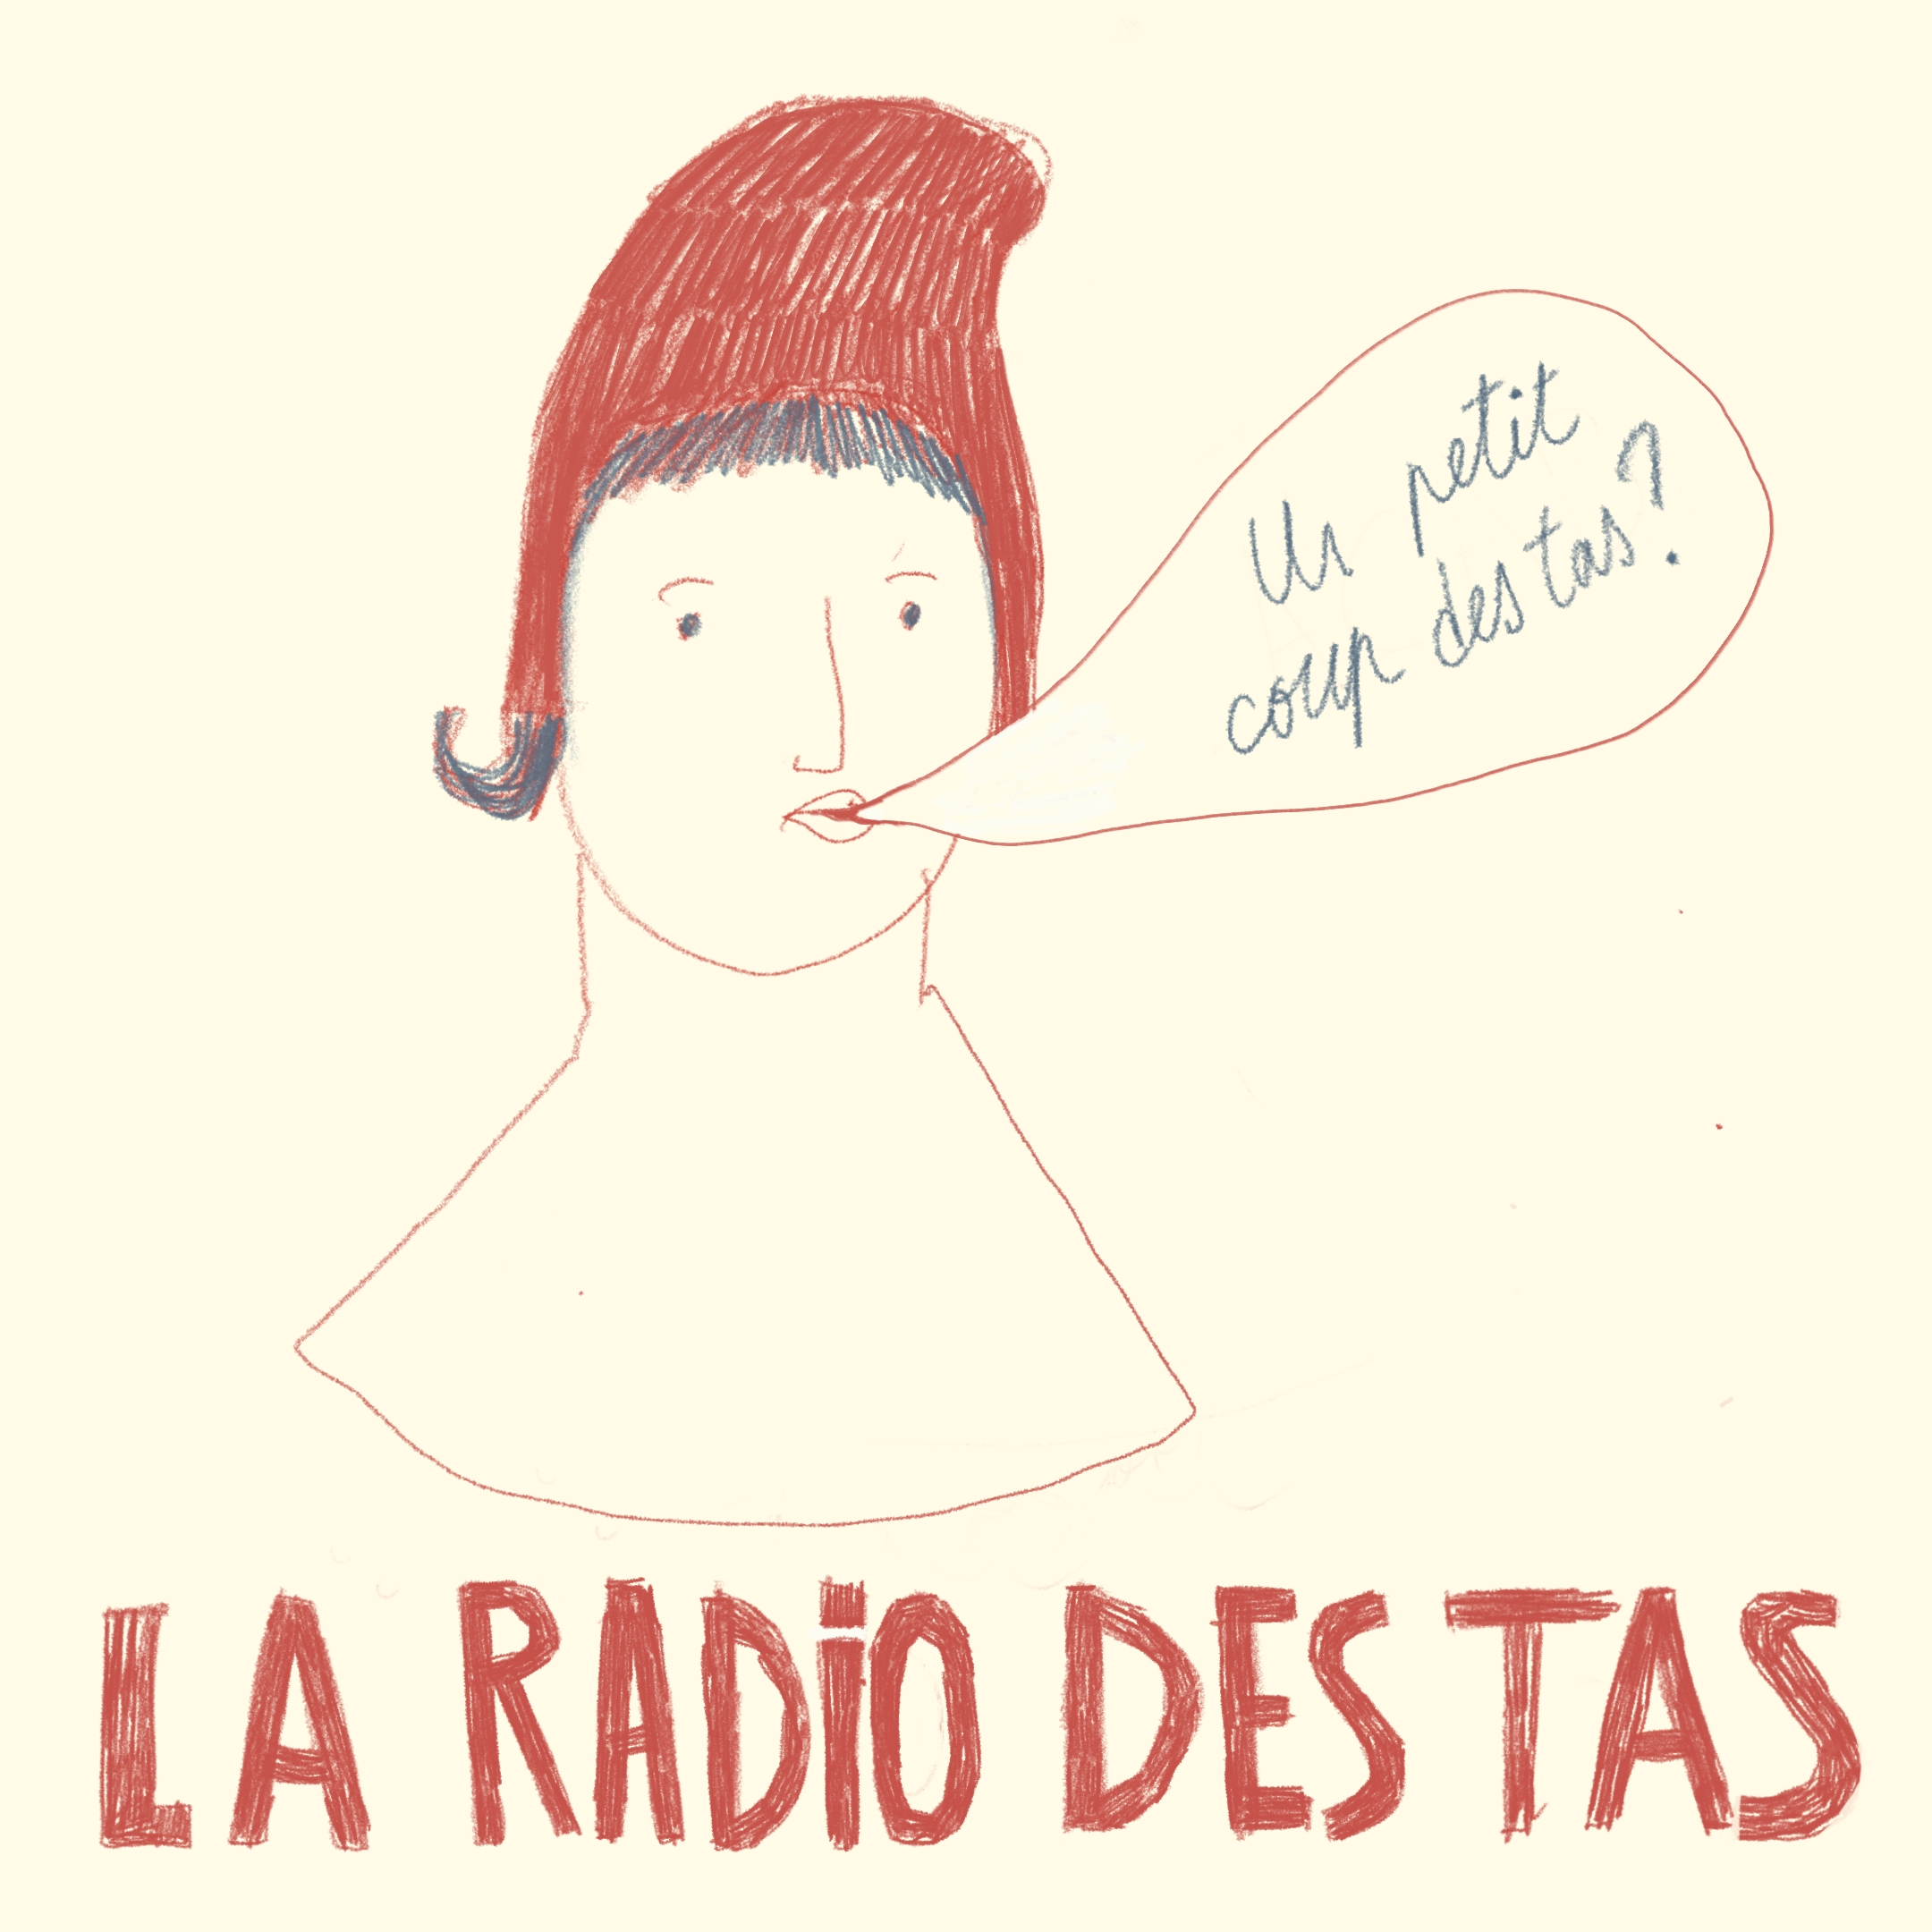 Visuel La radio des tas: Dessin d'une femme au bonnet phrygien, une bulle de BD distant "Un petit coup des tas ?". En dessous, écrit en capitale: "la radio des tas".